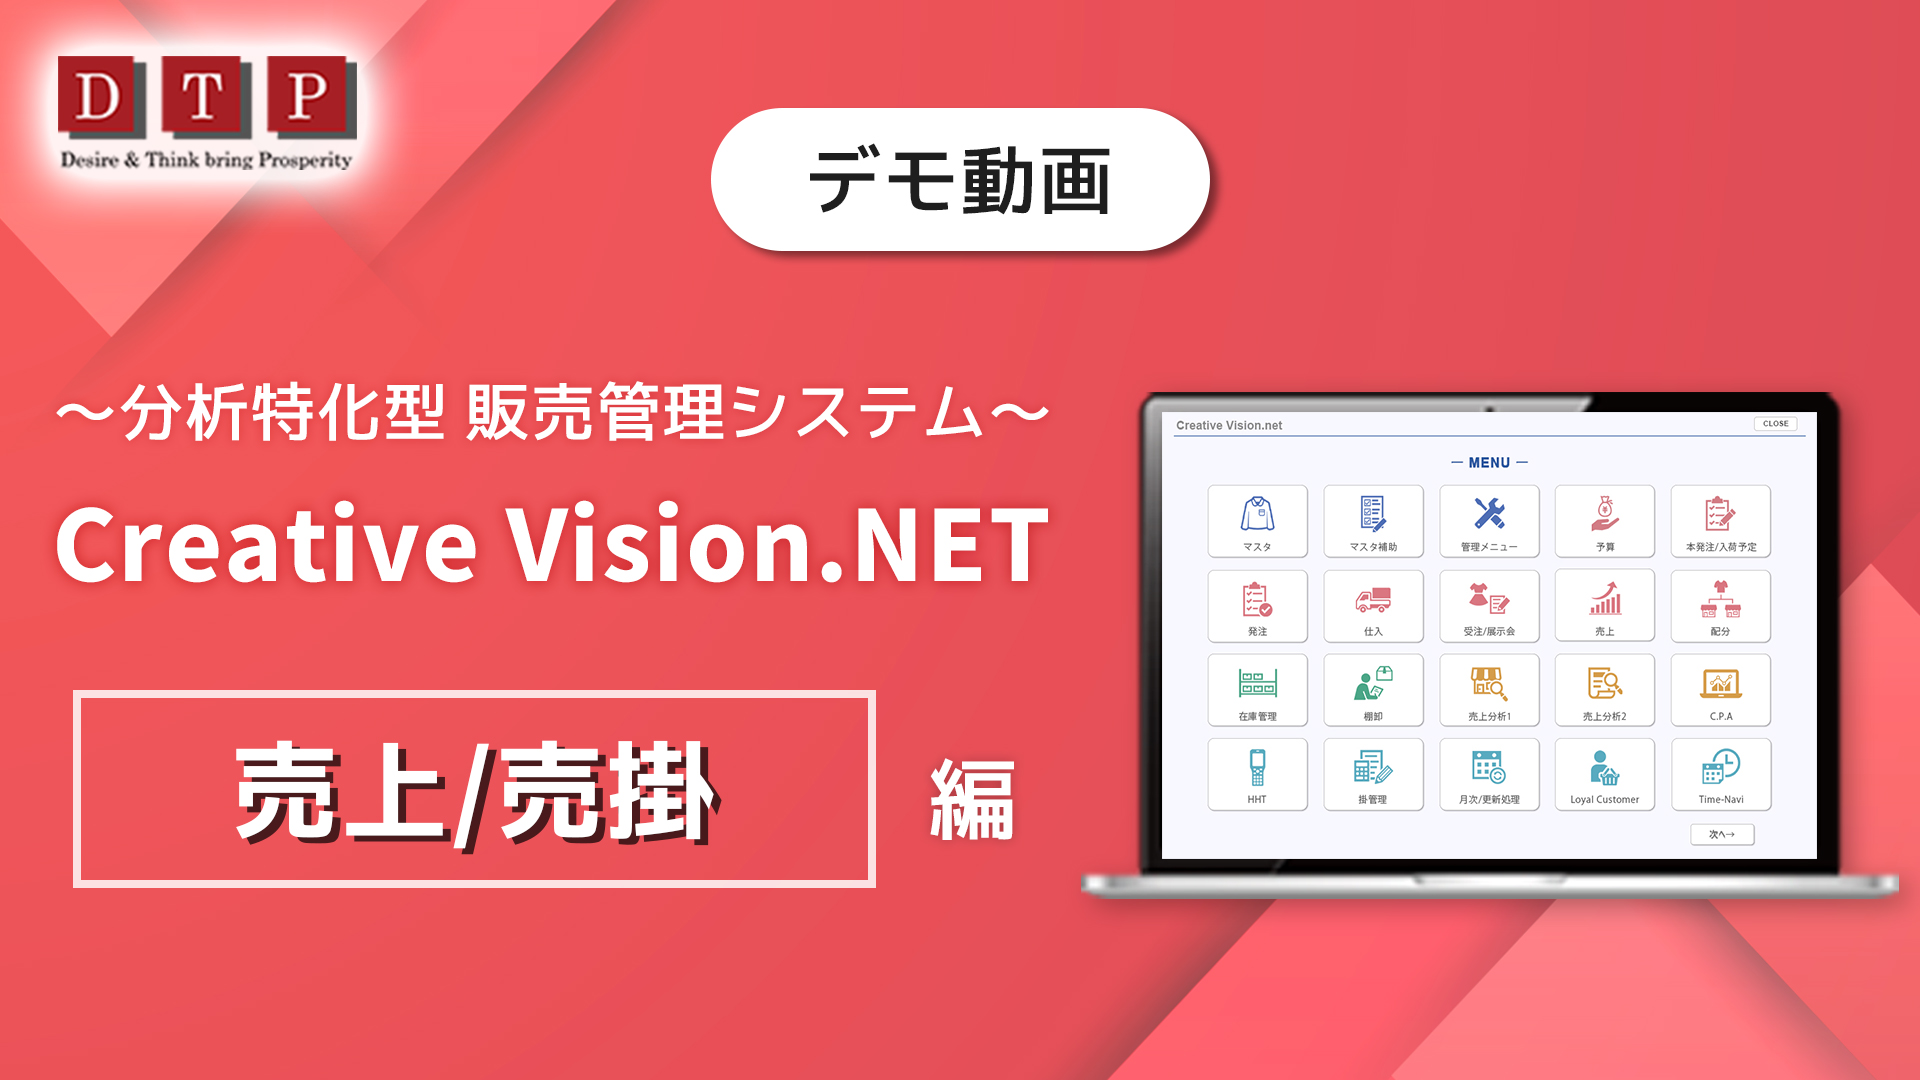 Creative Vision.NET EC売上